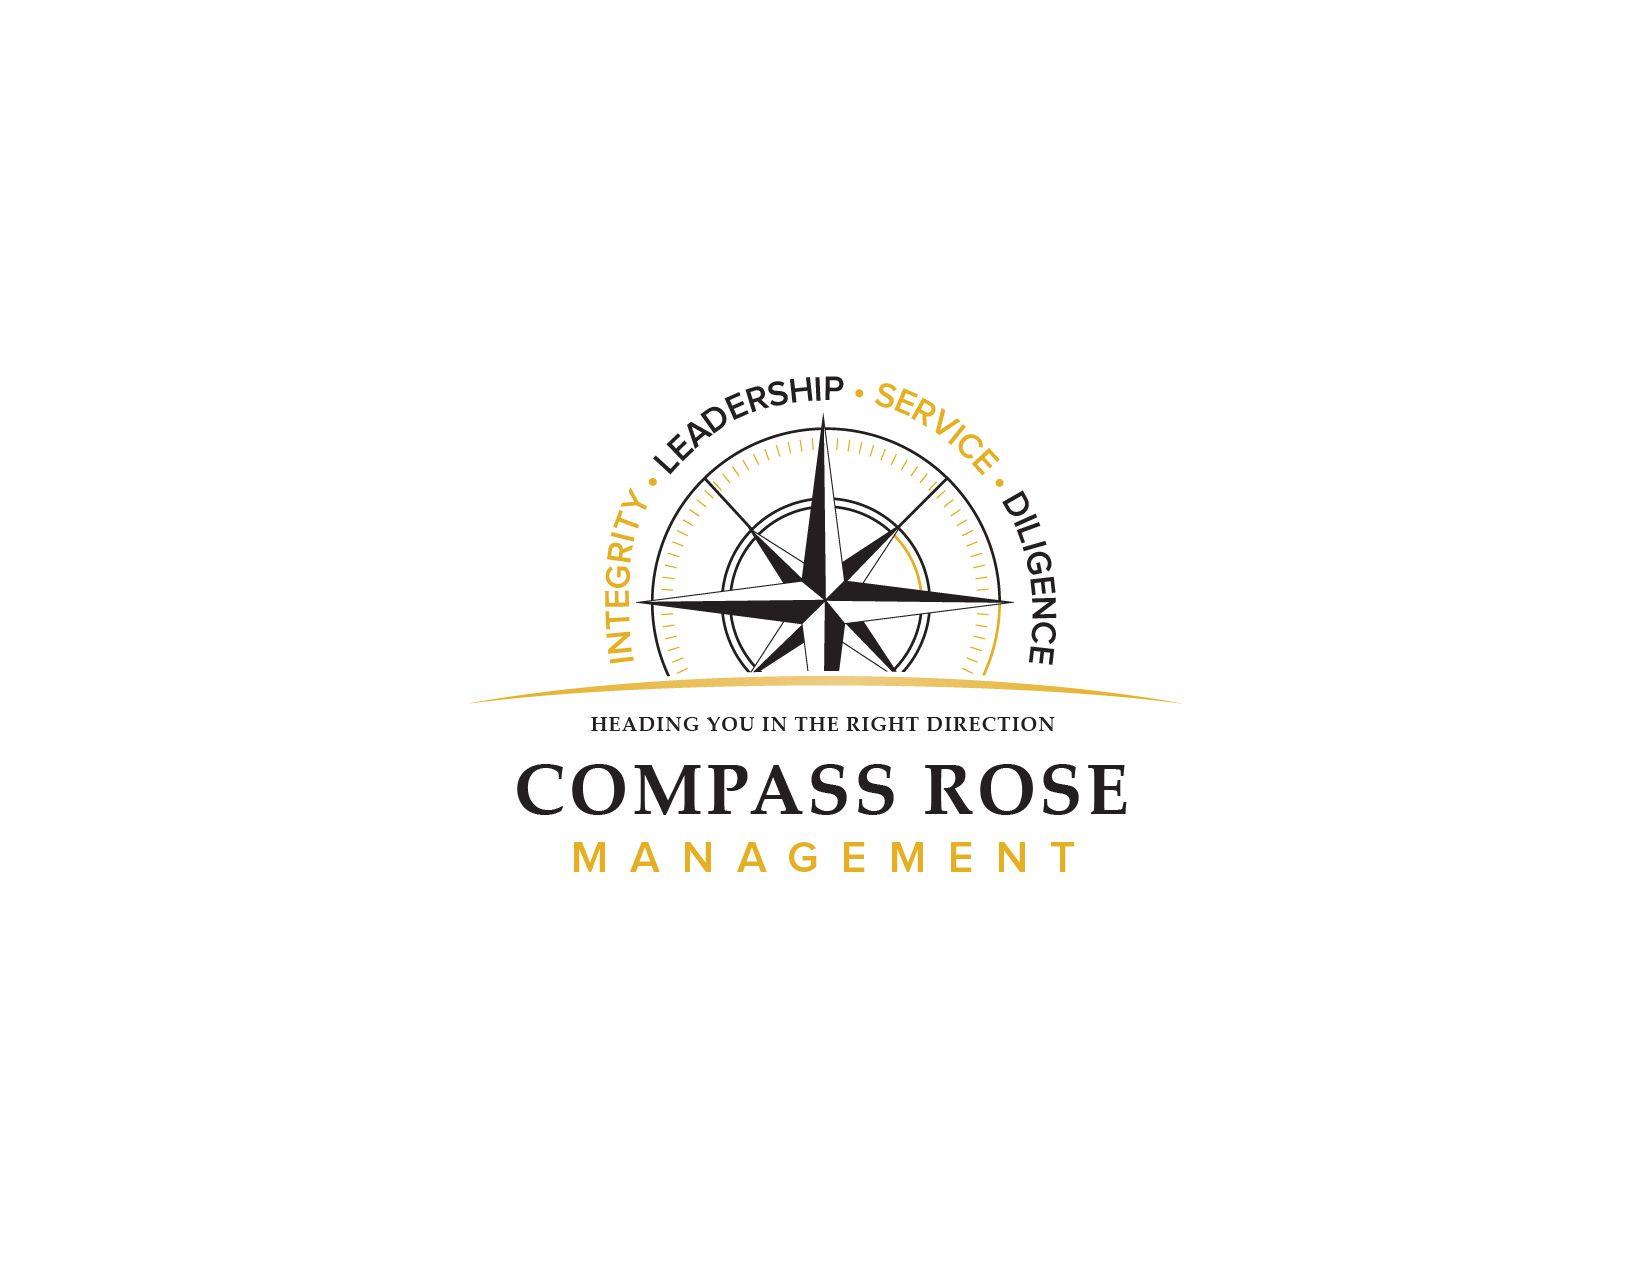 Compass Rose Logo - DesignContest - Compass Rose Management compass-rose-management